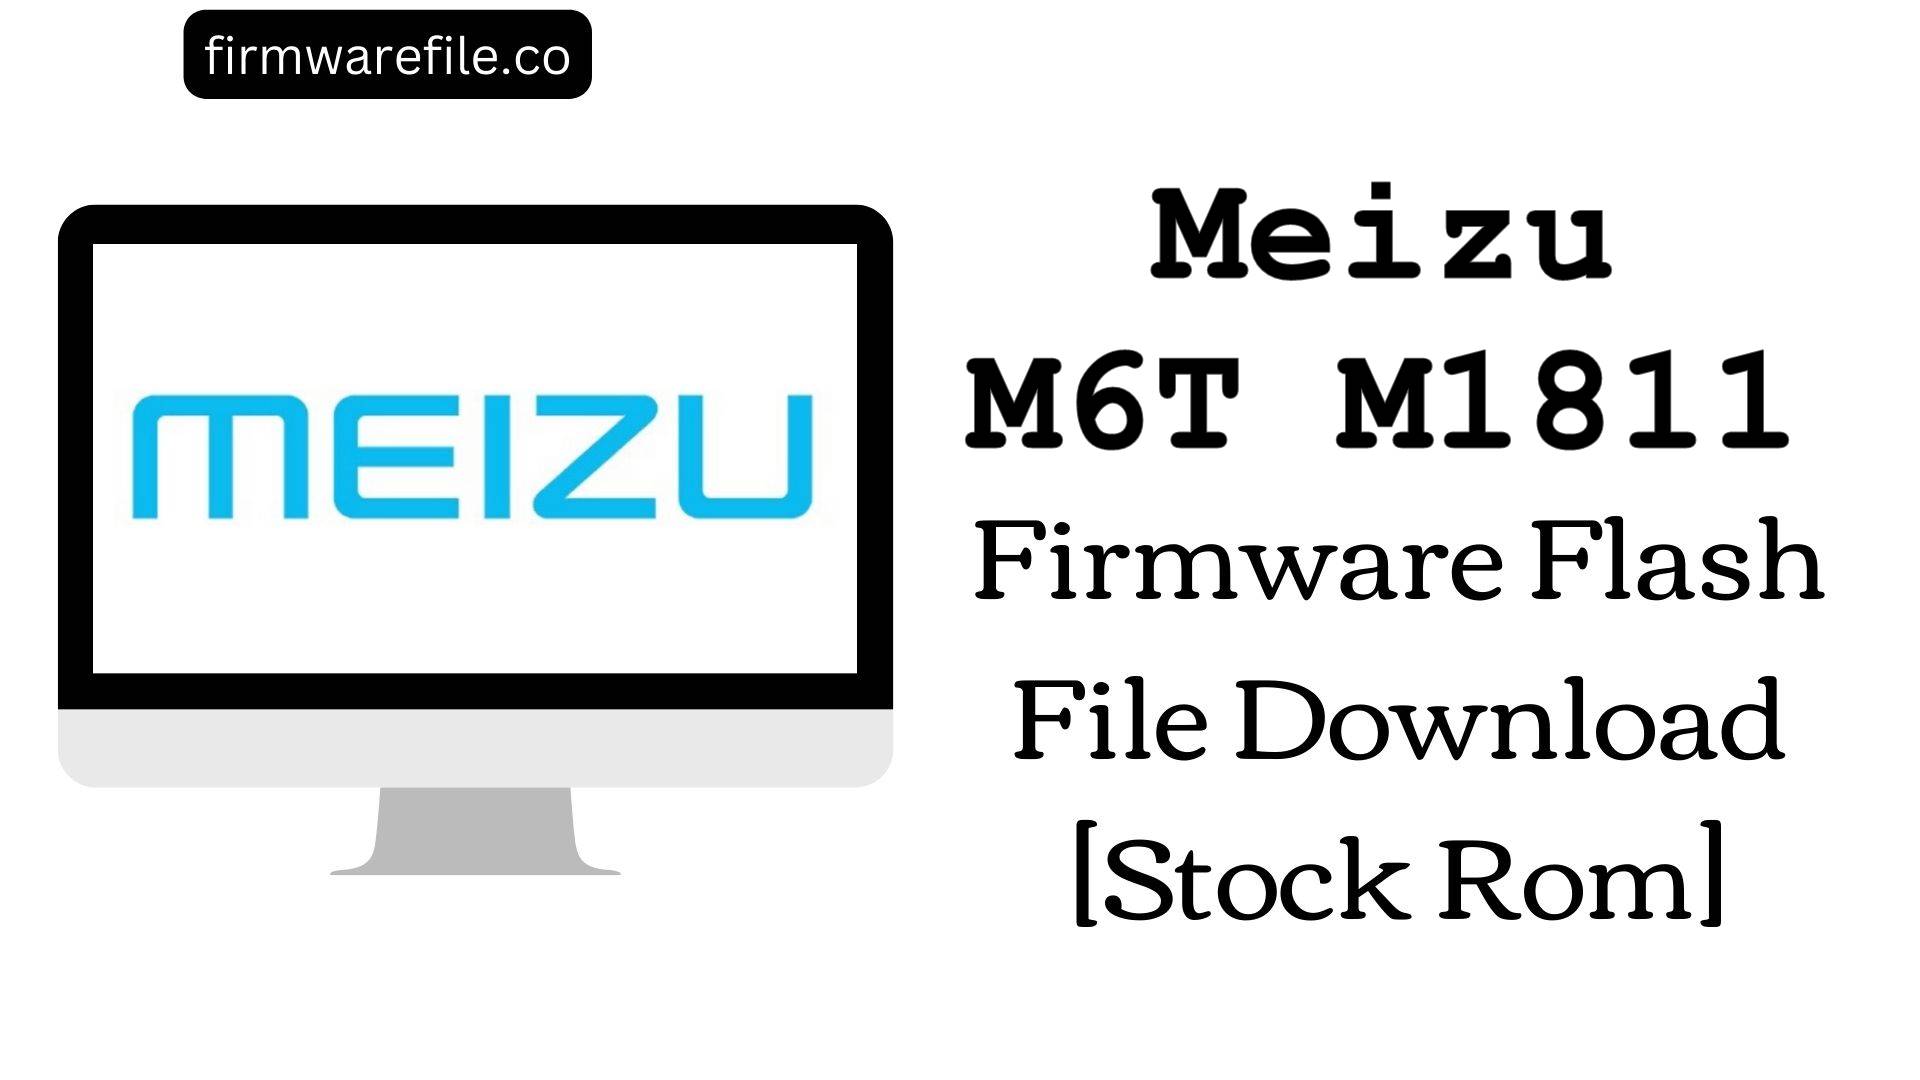 Meizu M6T M1811